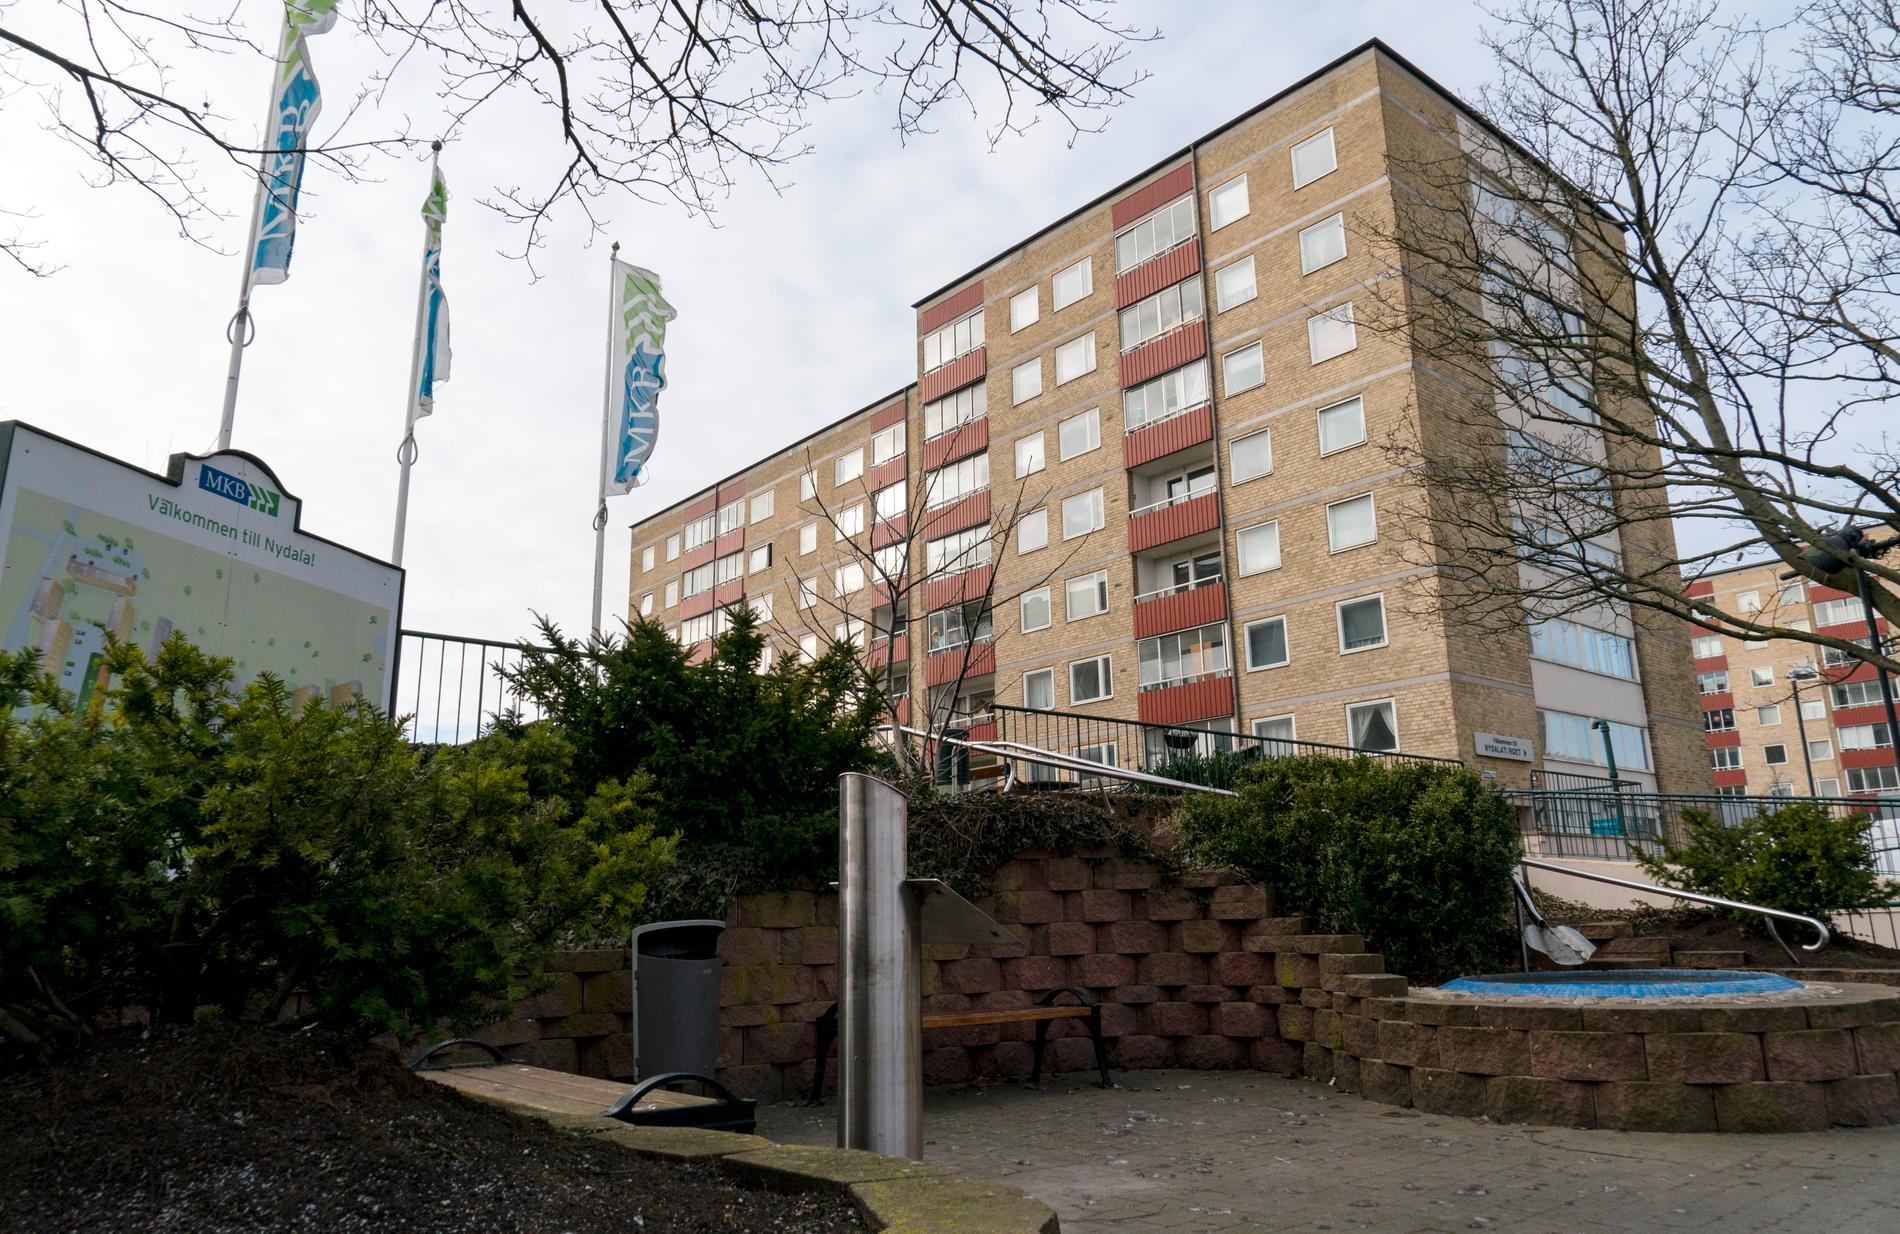  MKB flaggar på Nydala i Malmö. Kommunala MKB blir den fastighetsägare som främst ska upplåta bostäder om förslaget går igenom. 